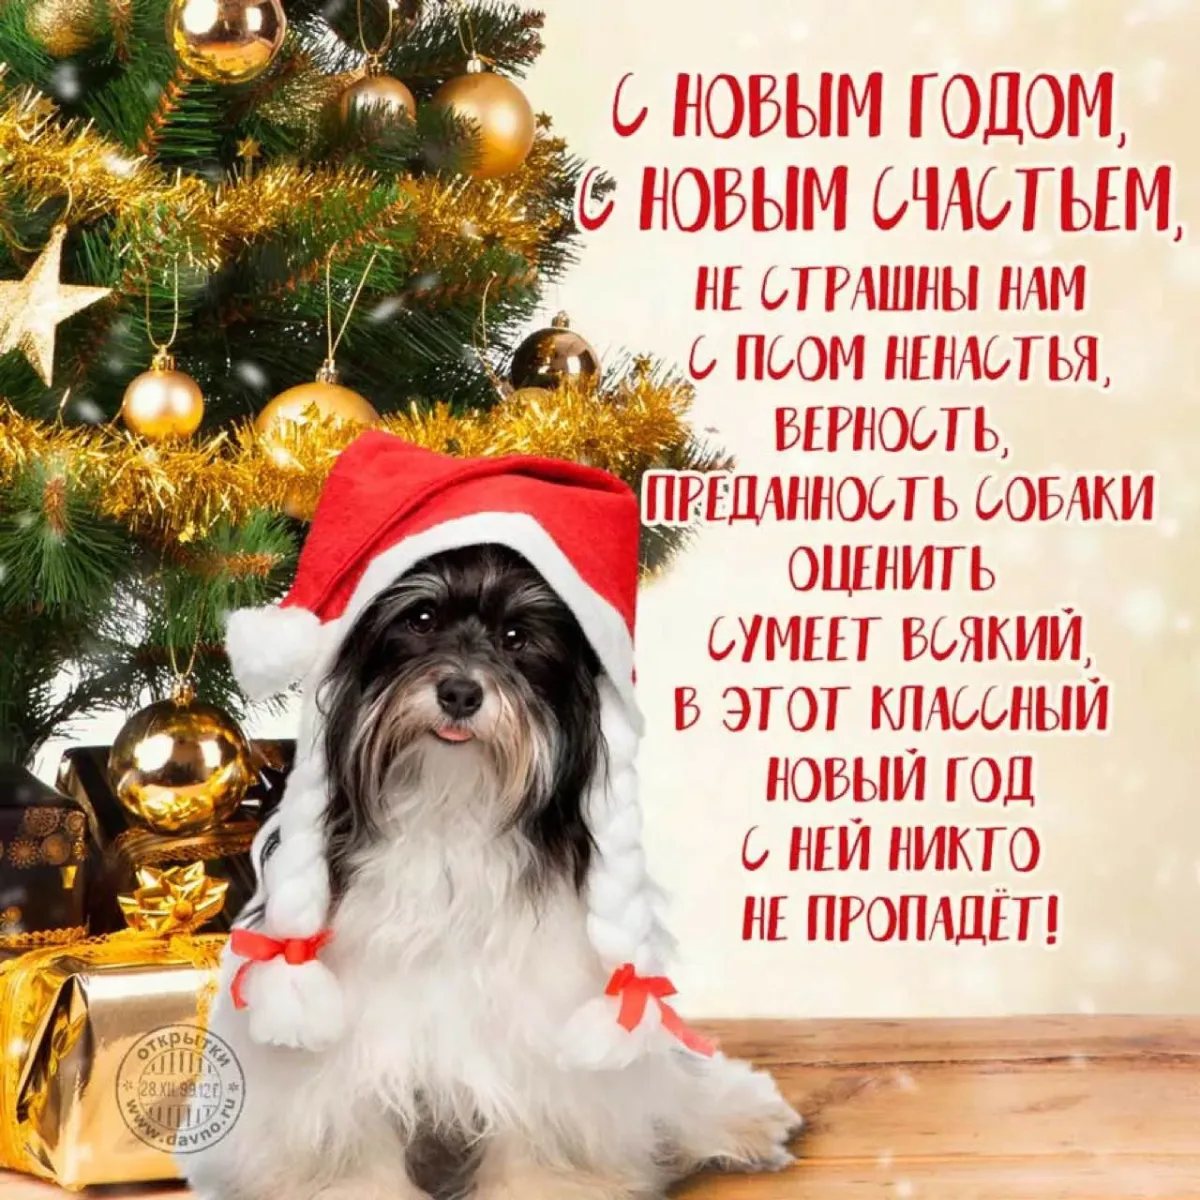 Поздравления с днем новый год. Поздравление с новым годом. С новым годом собаки. Новогодние открытки с собаками. Поздравления с новым годом 2018 собаки.